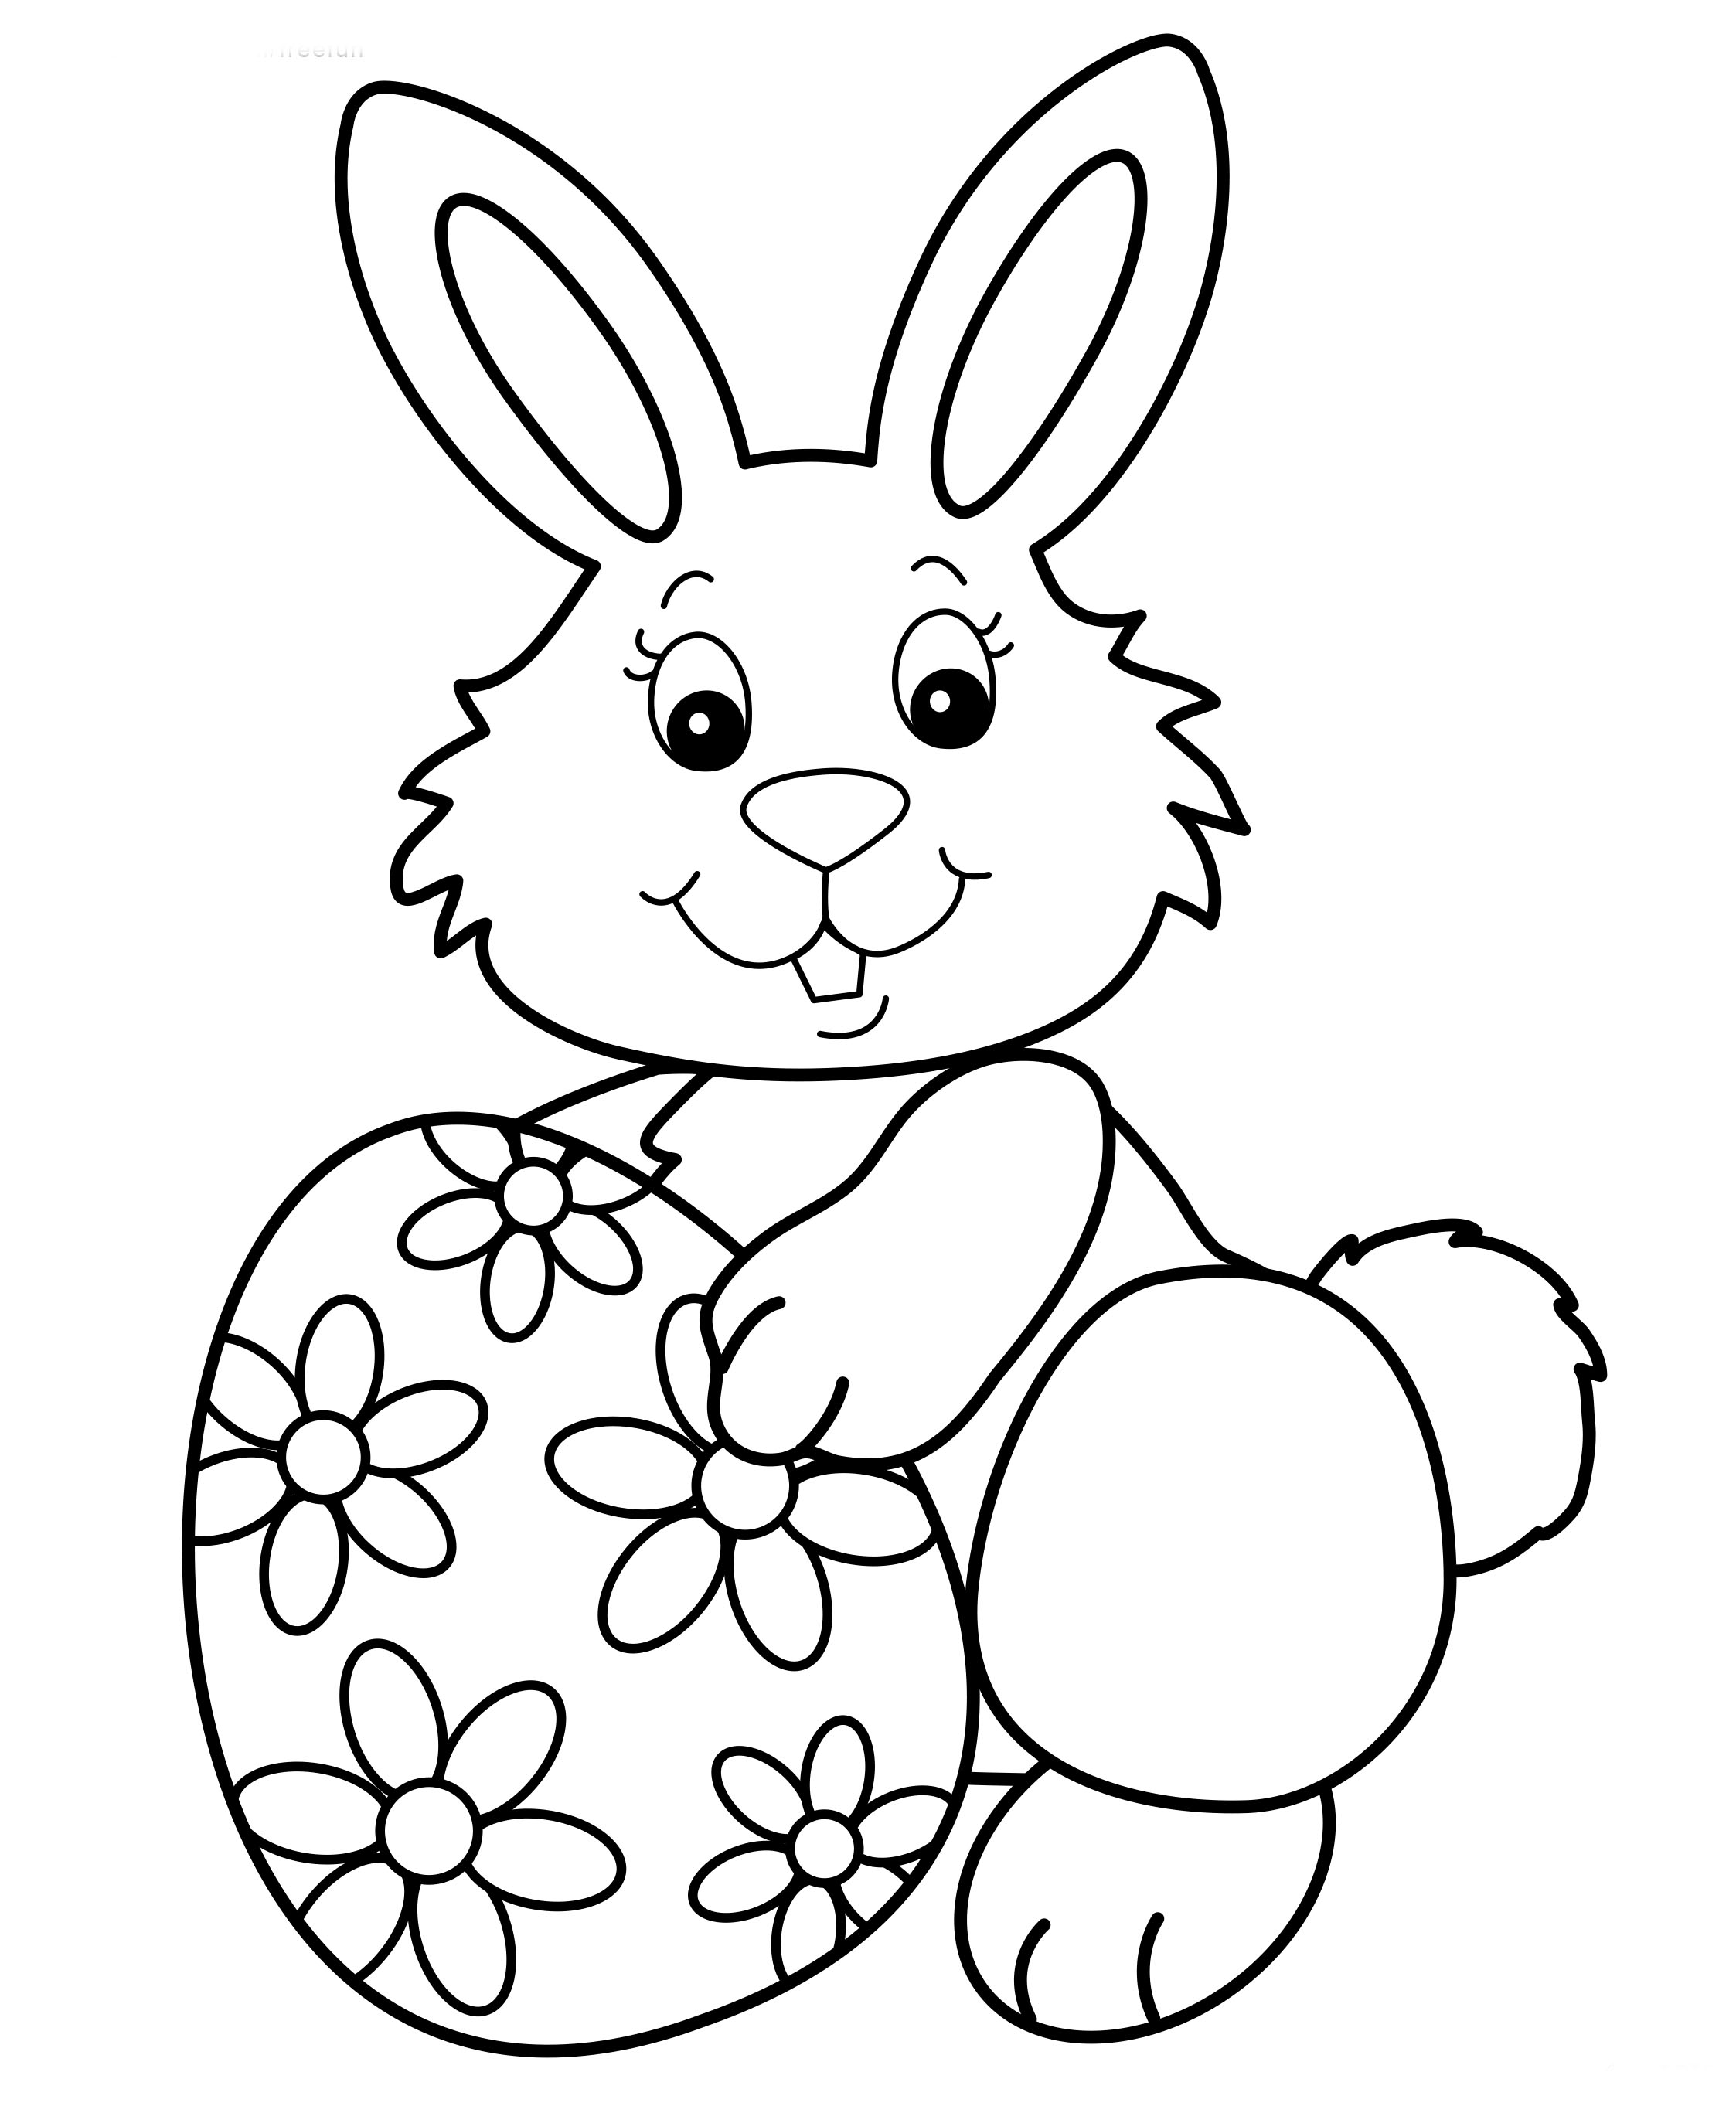 Кролик ребенку 4 лет. Раскраска Пасха. Зайчик раскраска для детей. Пасхальный кролик раскраска. Раскраска Пасха для детей.